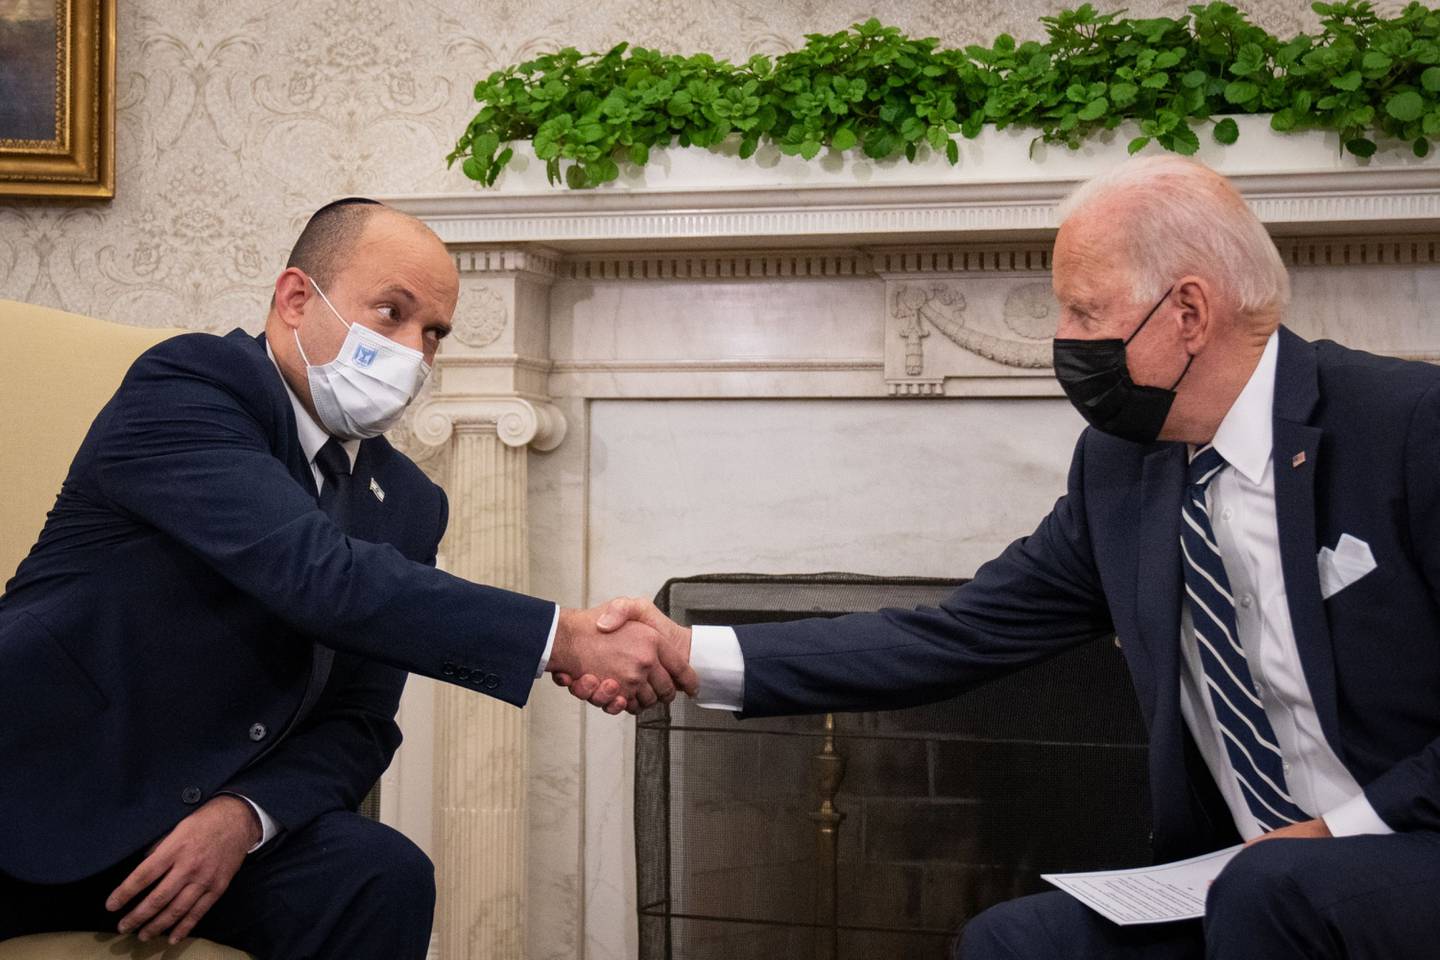 El presidente Joe Biden le da la mano al primer ministro israelí Naftali Bennett durante una reunión